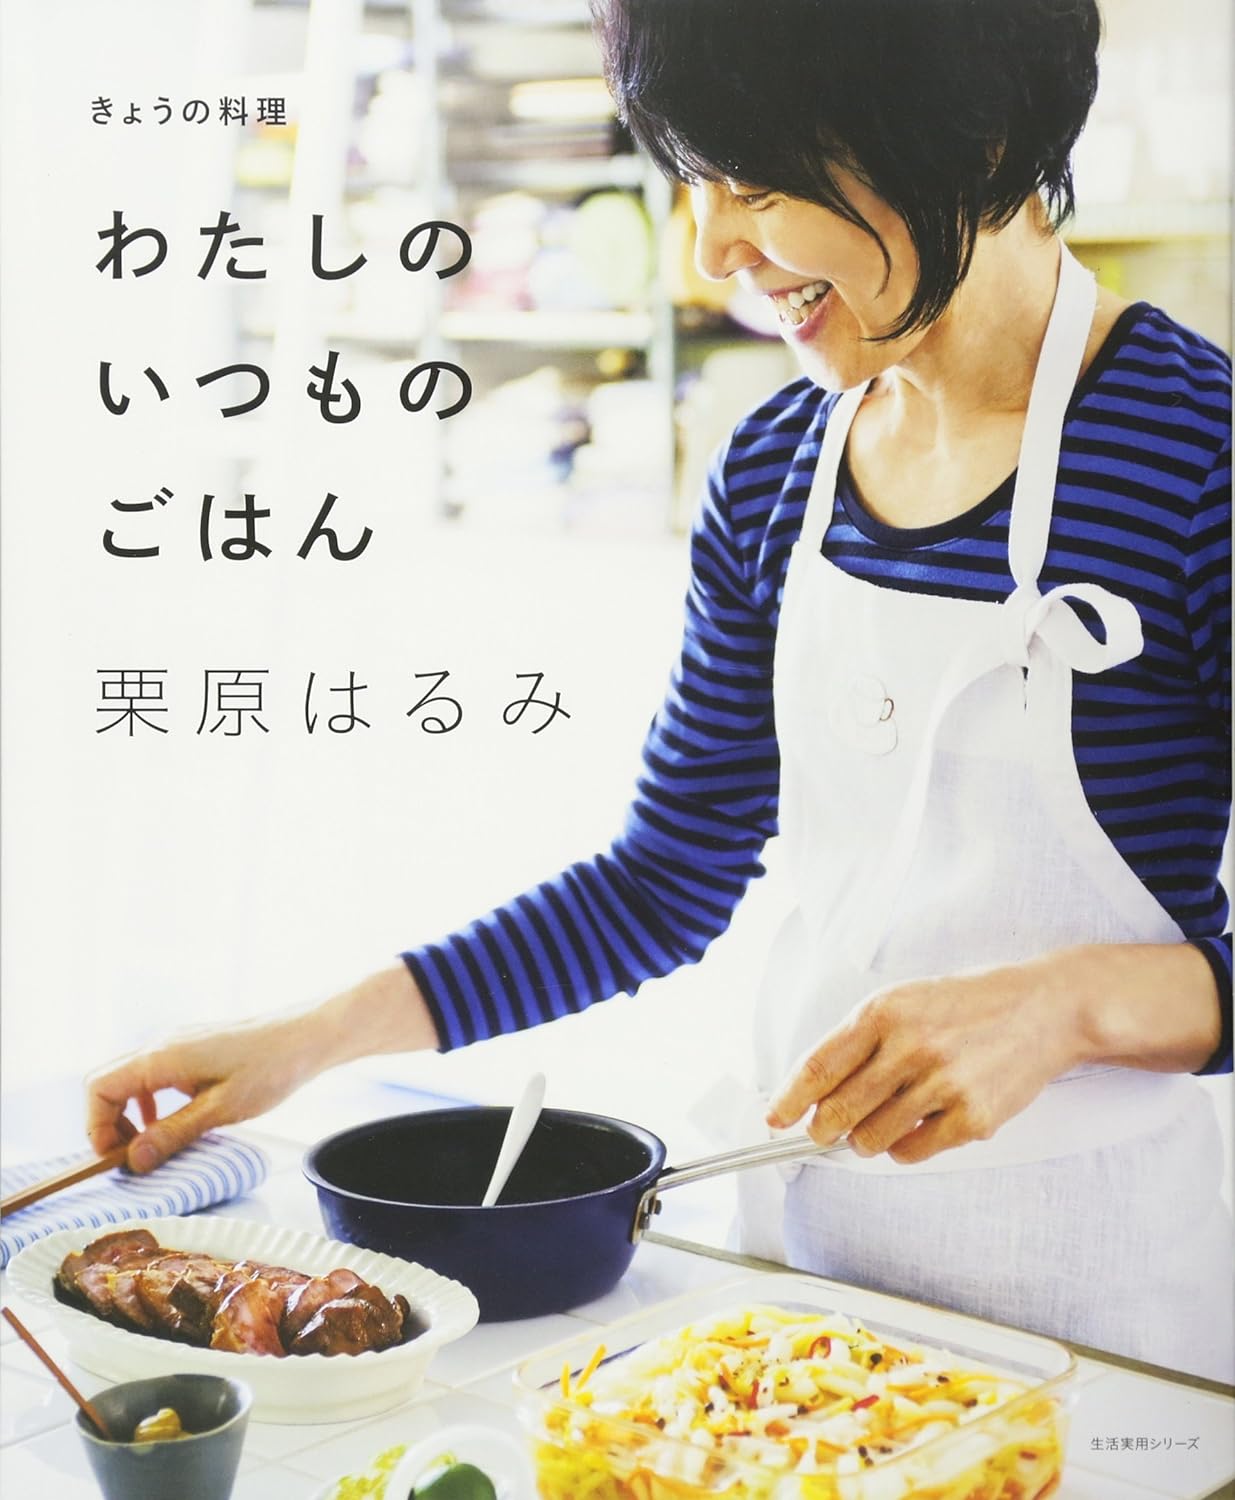 【書籍】きょうの料理 わたしのいつものごはん 栗原はるみ 著 NHK出版